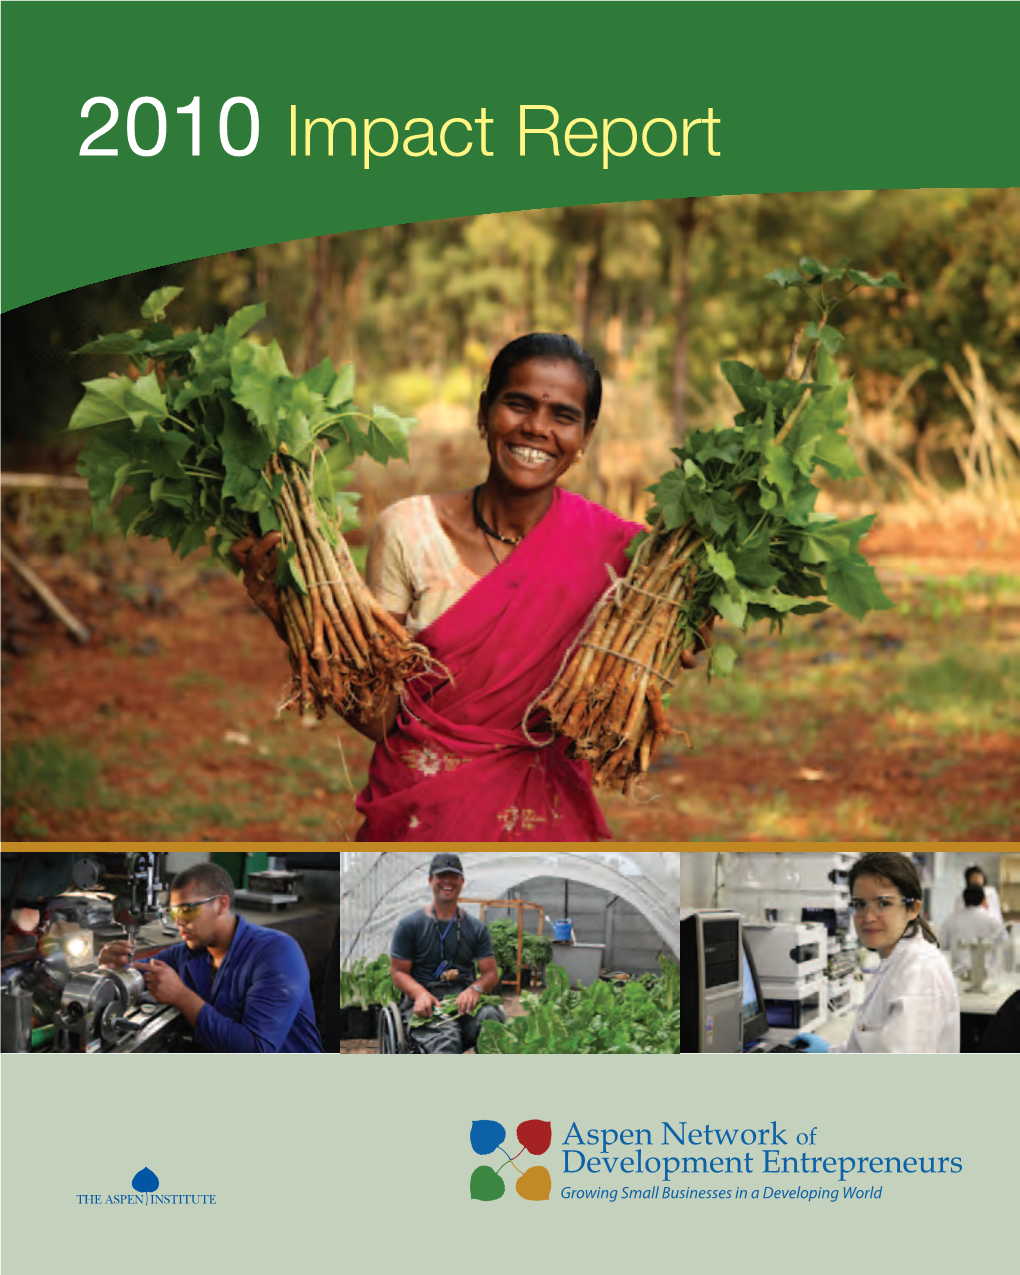 Aspen Network of Development Entrepreneurs 2010 Impact Report